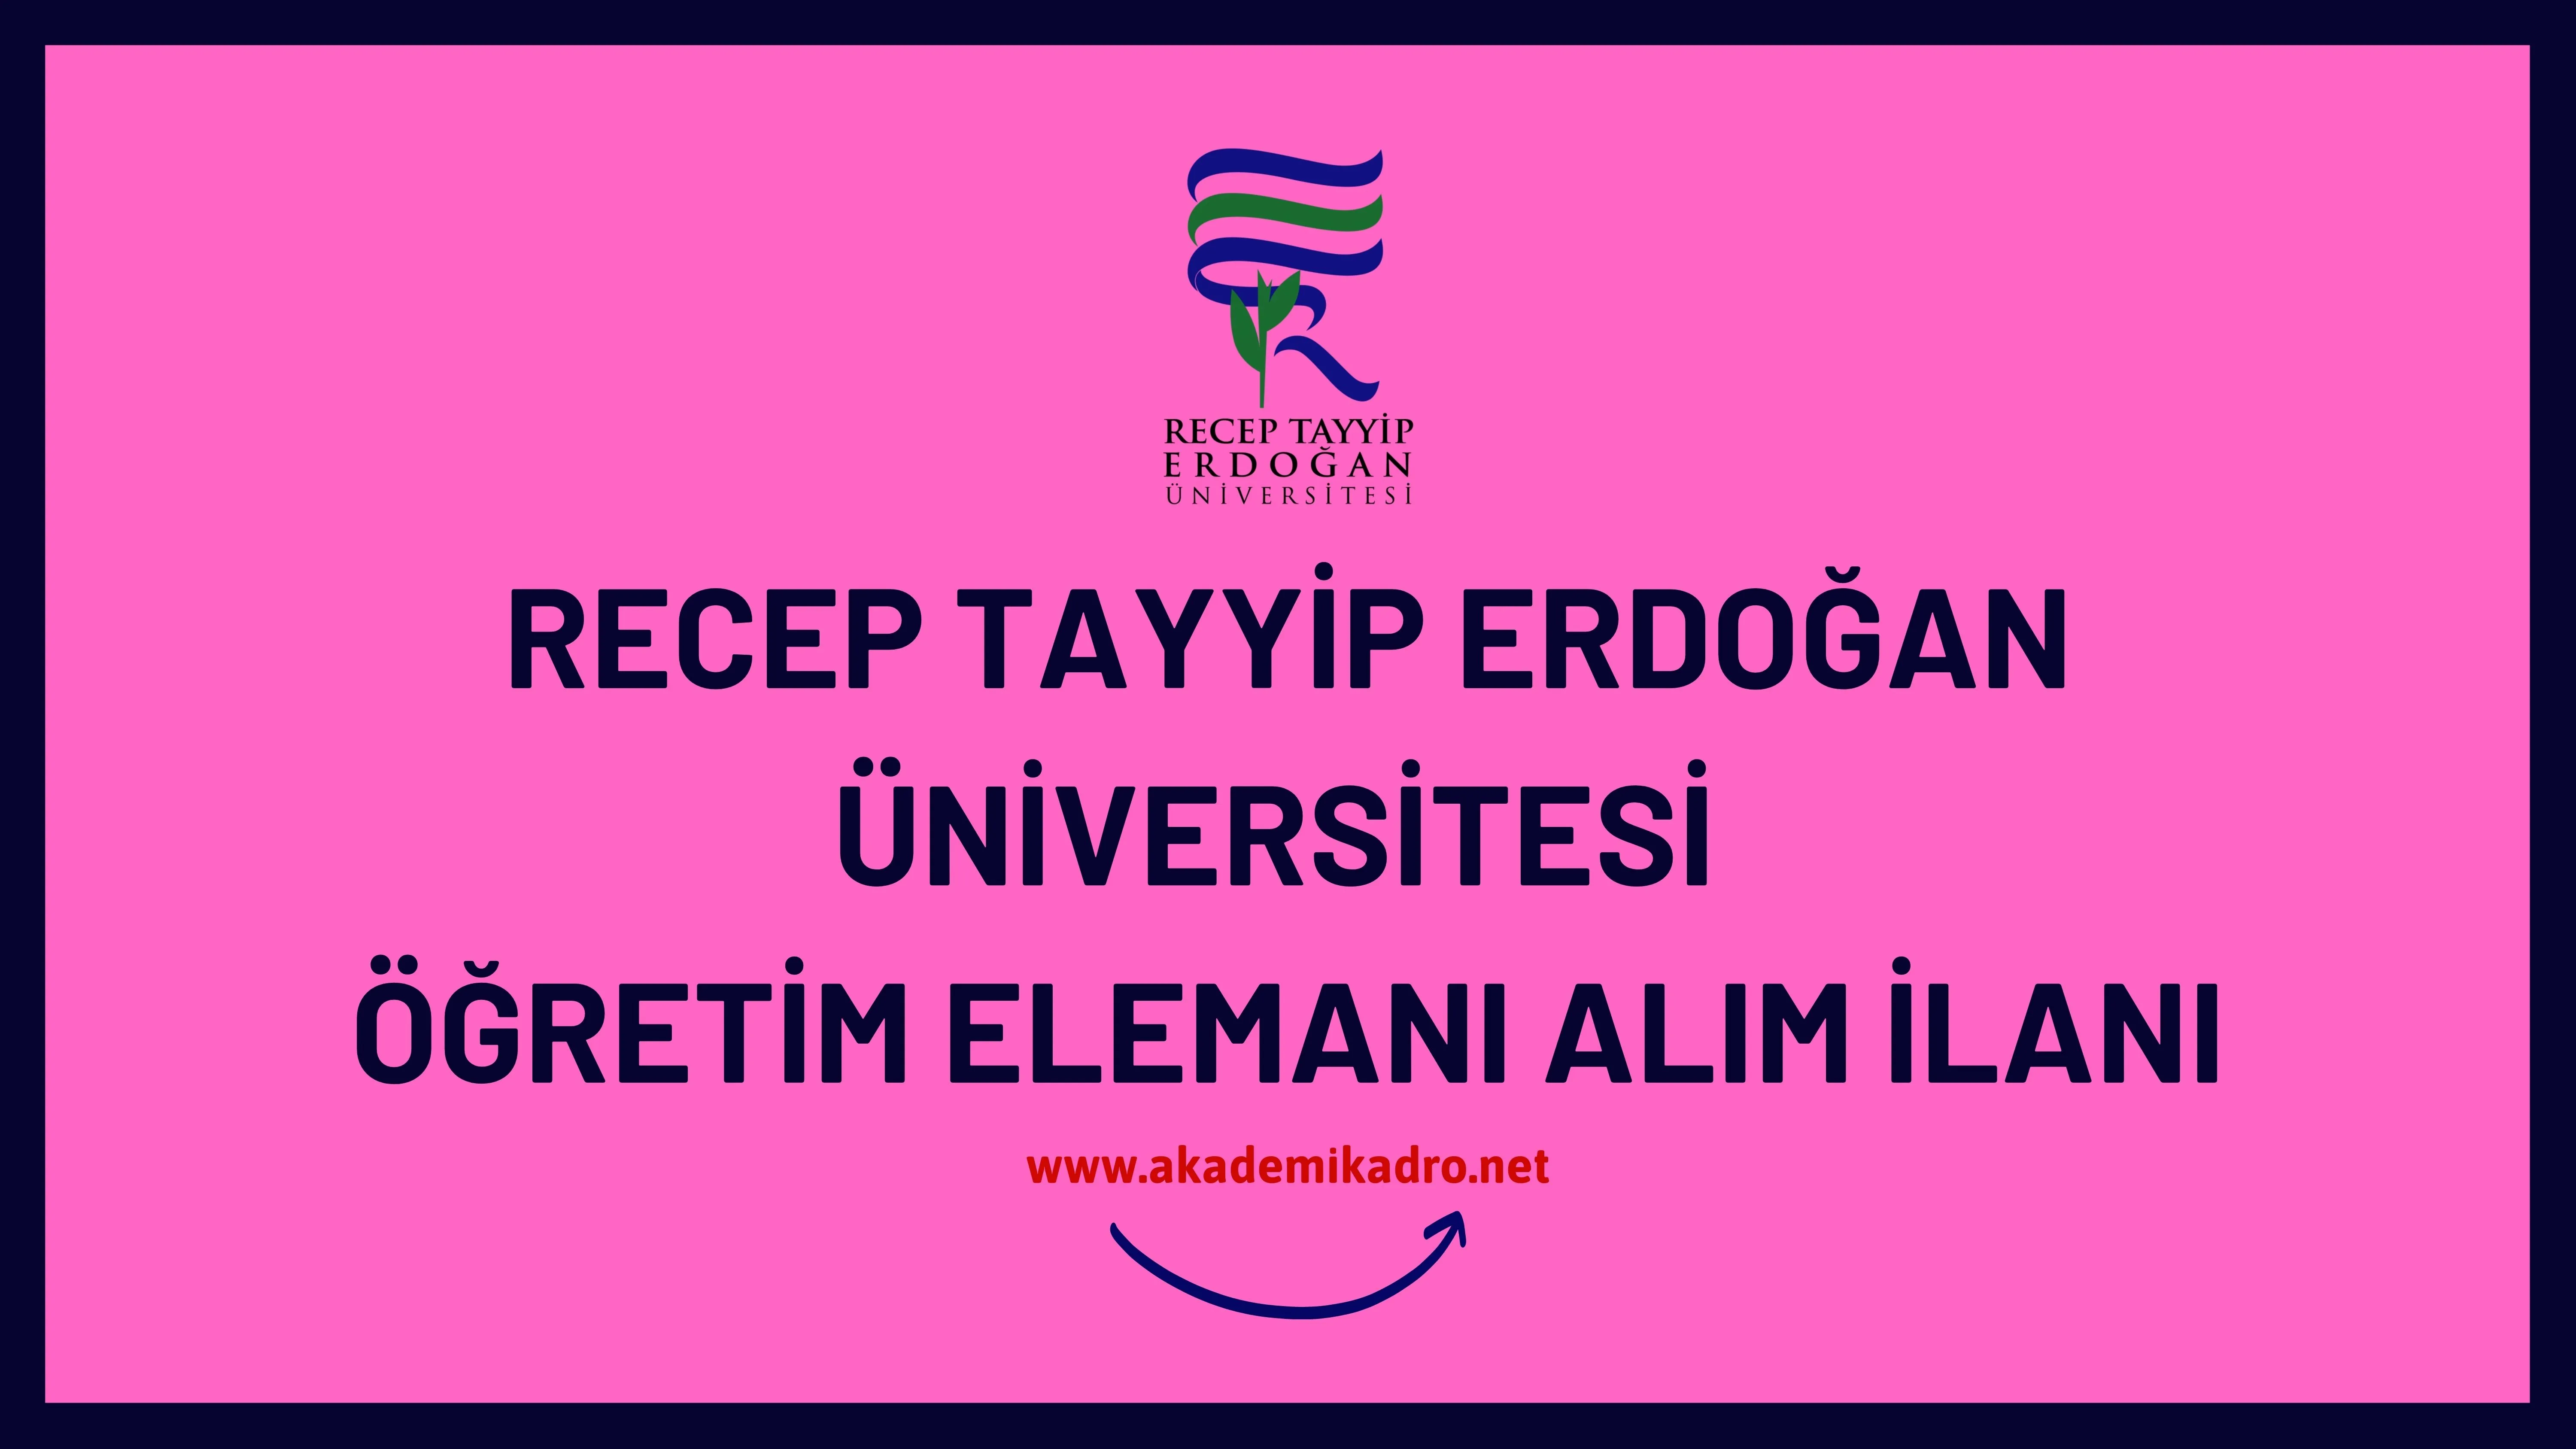 Recep Tayyip Erdoğan Üniversitesi 12 Araştırma Görevlisi, 7 Öğretim Görevlisi ve 43 Öğretim üyesi alacaktır. Son başvuru tarihi 02 Aralık 2022